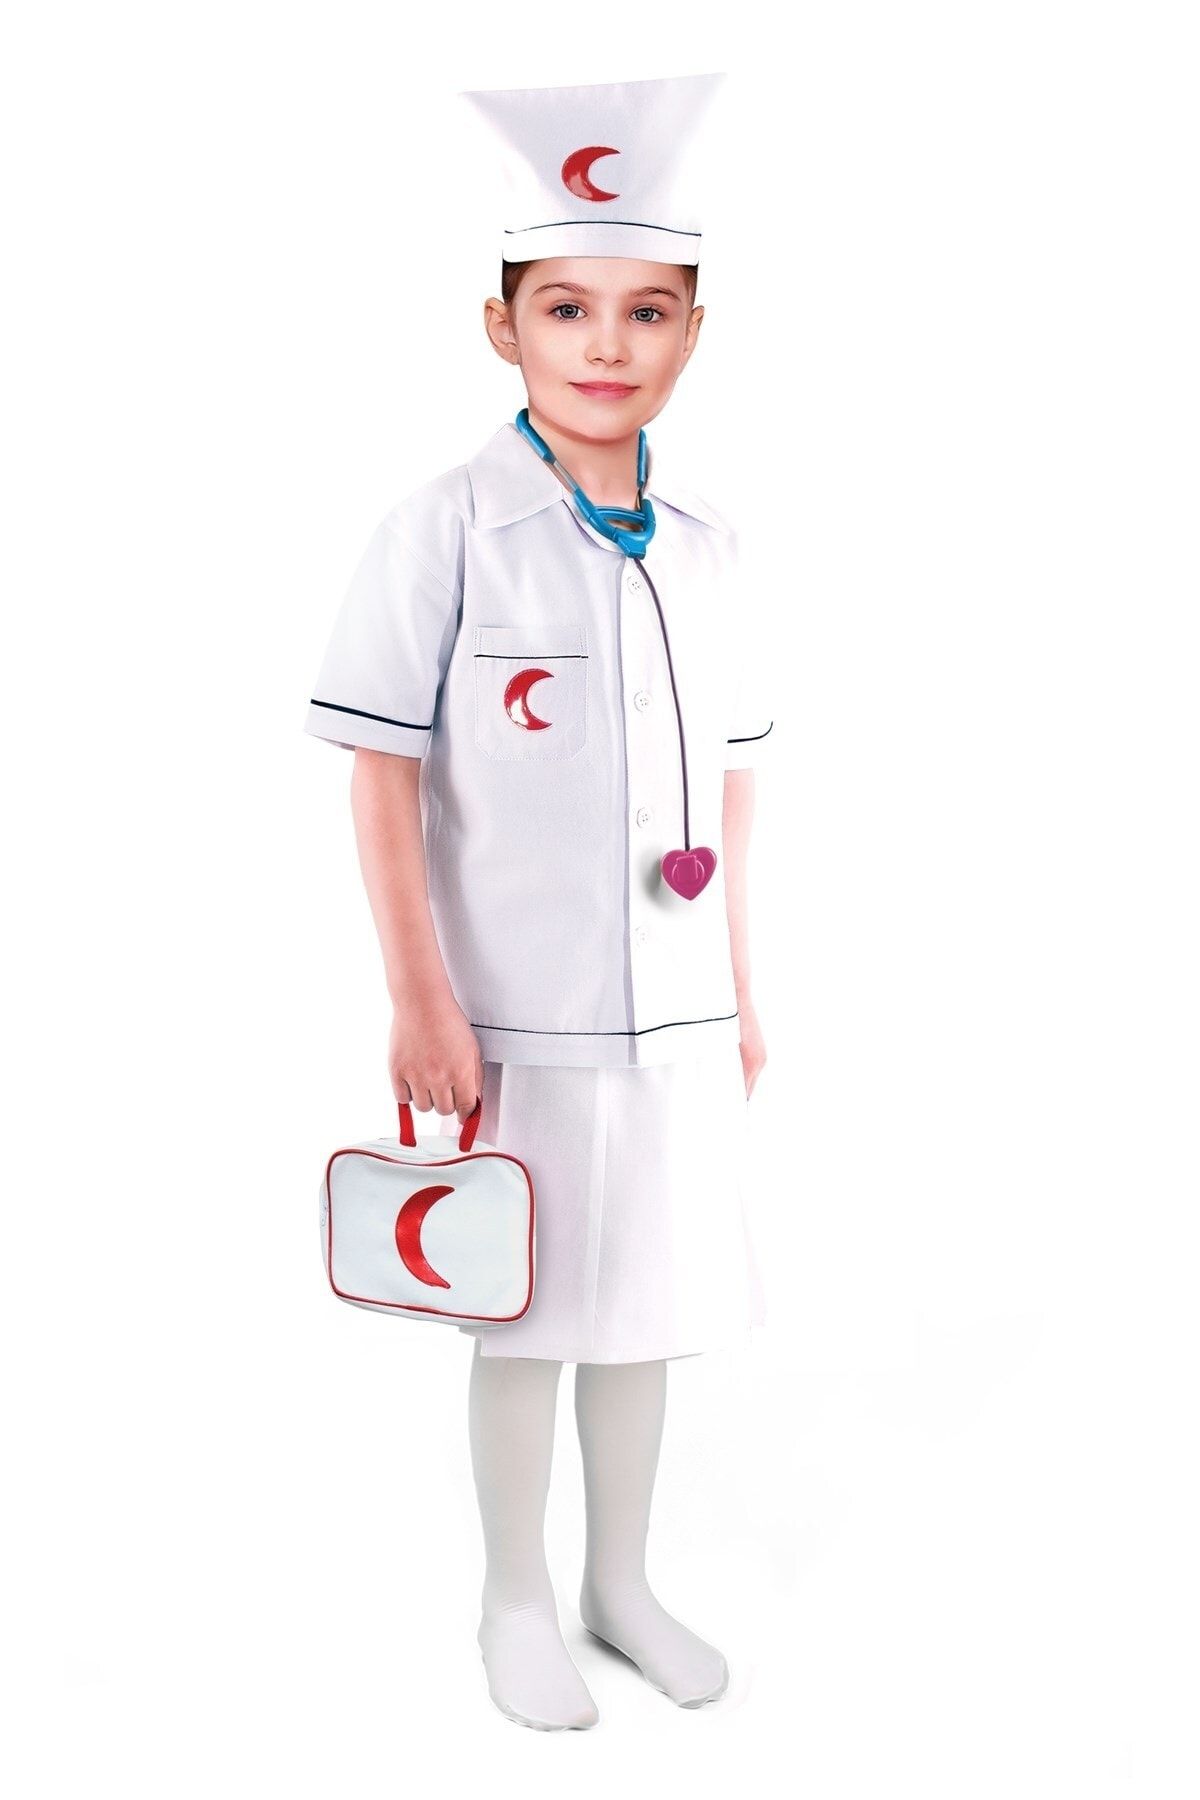 OULABİMİR Doktor Kız Kostümü Çocuk Kıyafeti